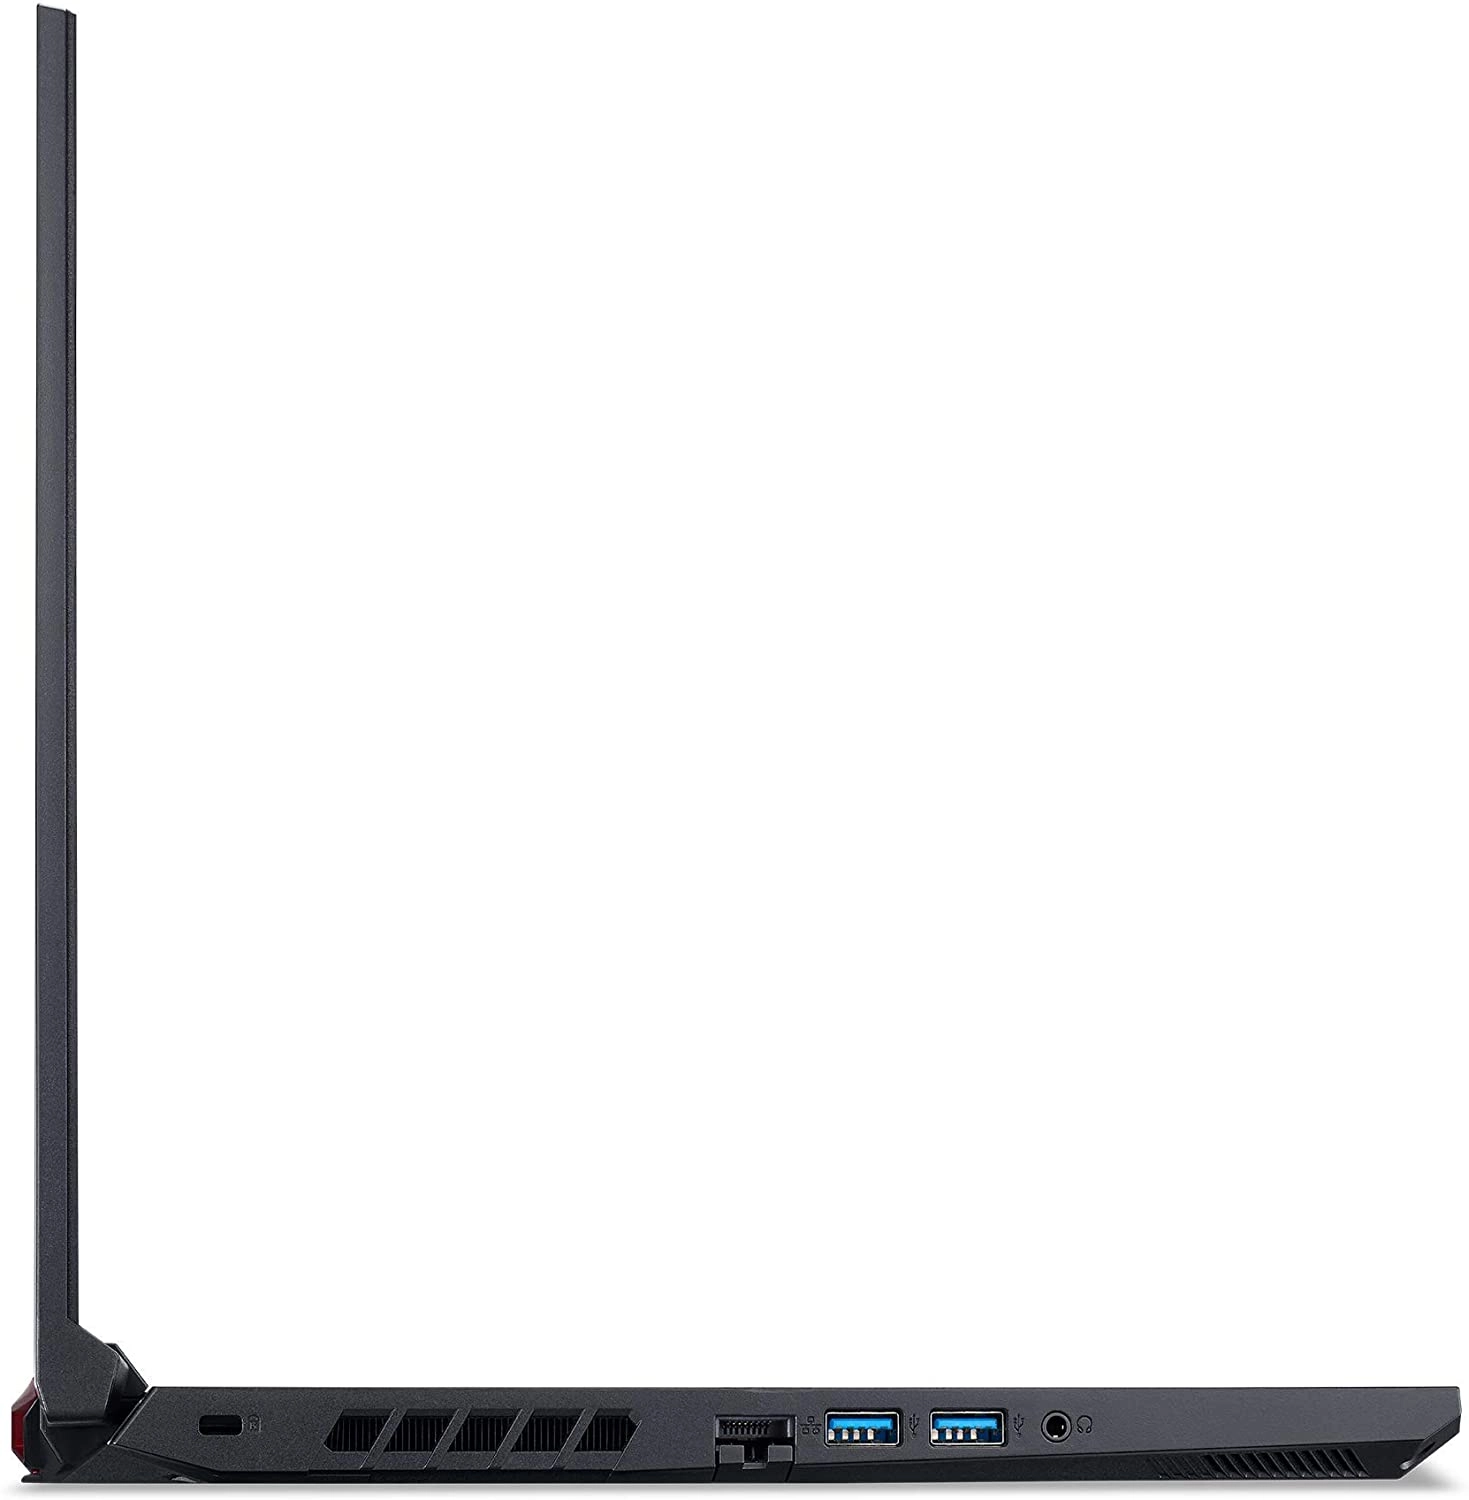 Acer Nitro 5 laptop image